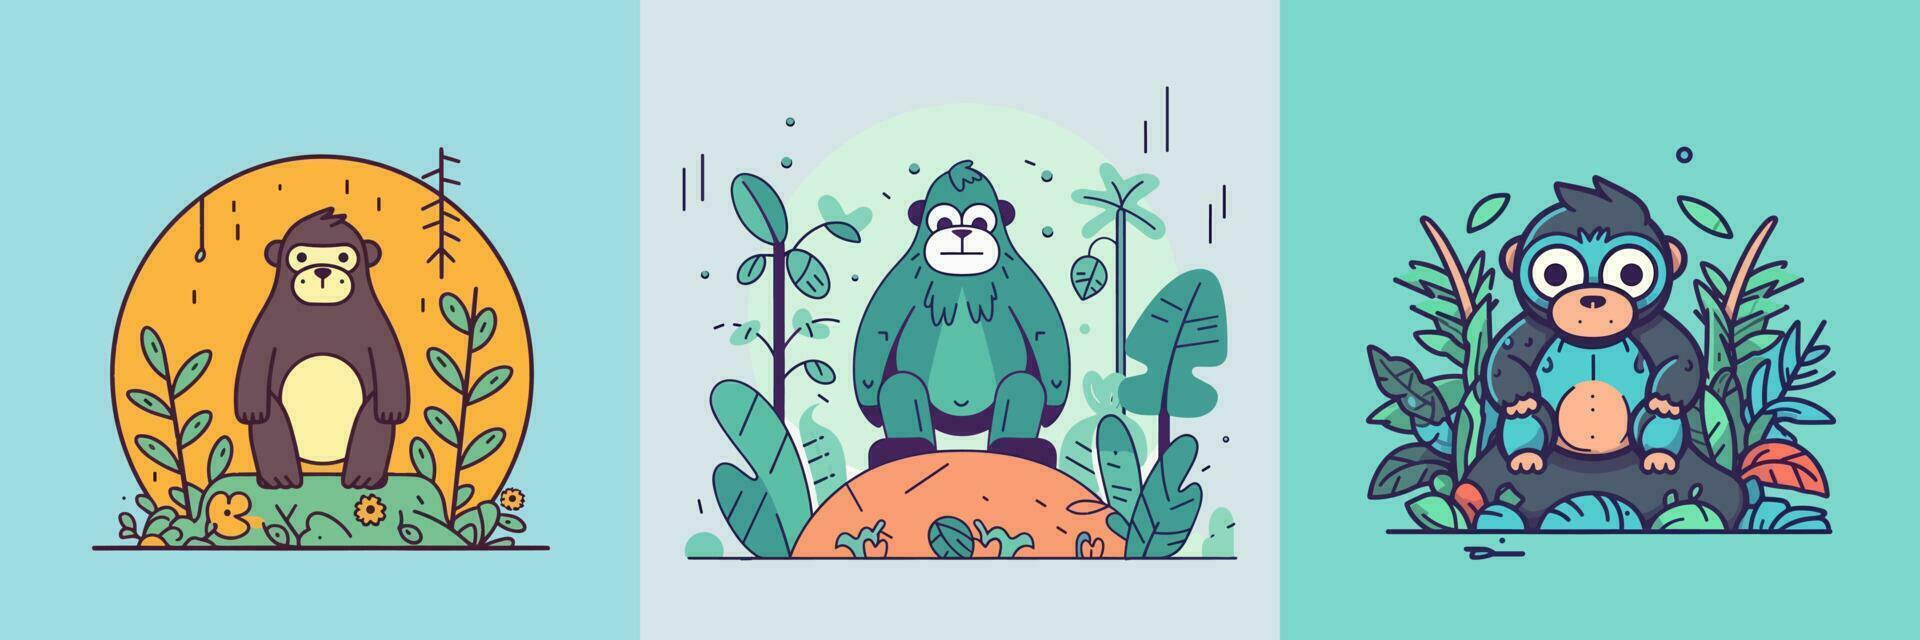 fofa kawaii gorila desenho animado ilustração vetor